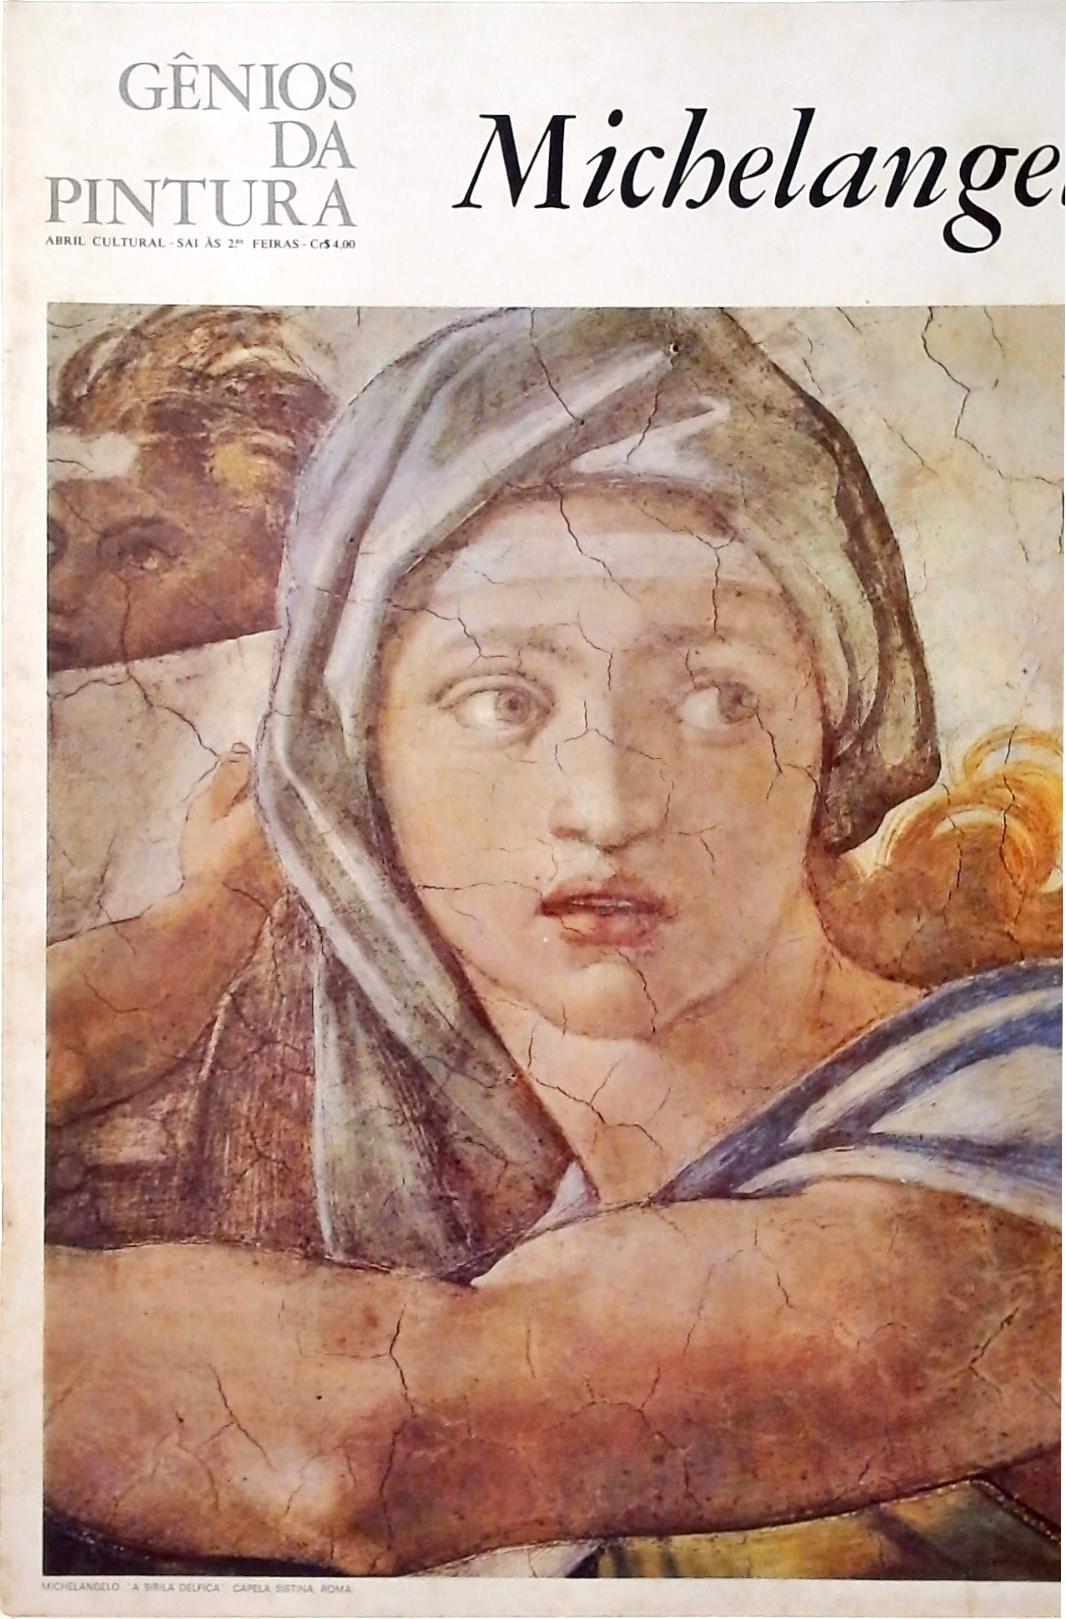 Gênios da Pintura - Michelangelo